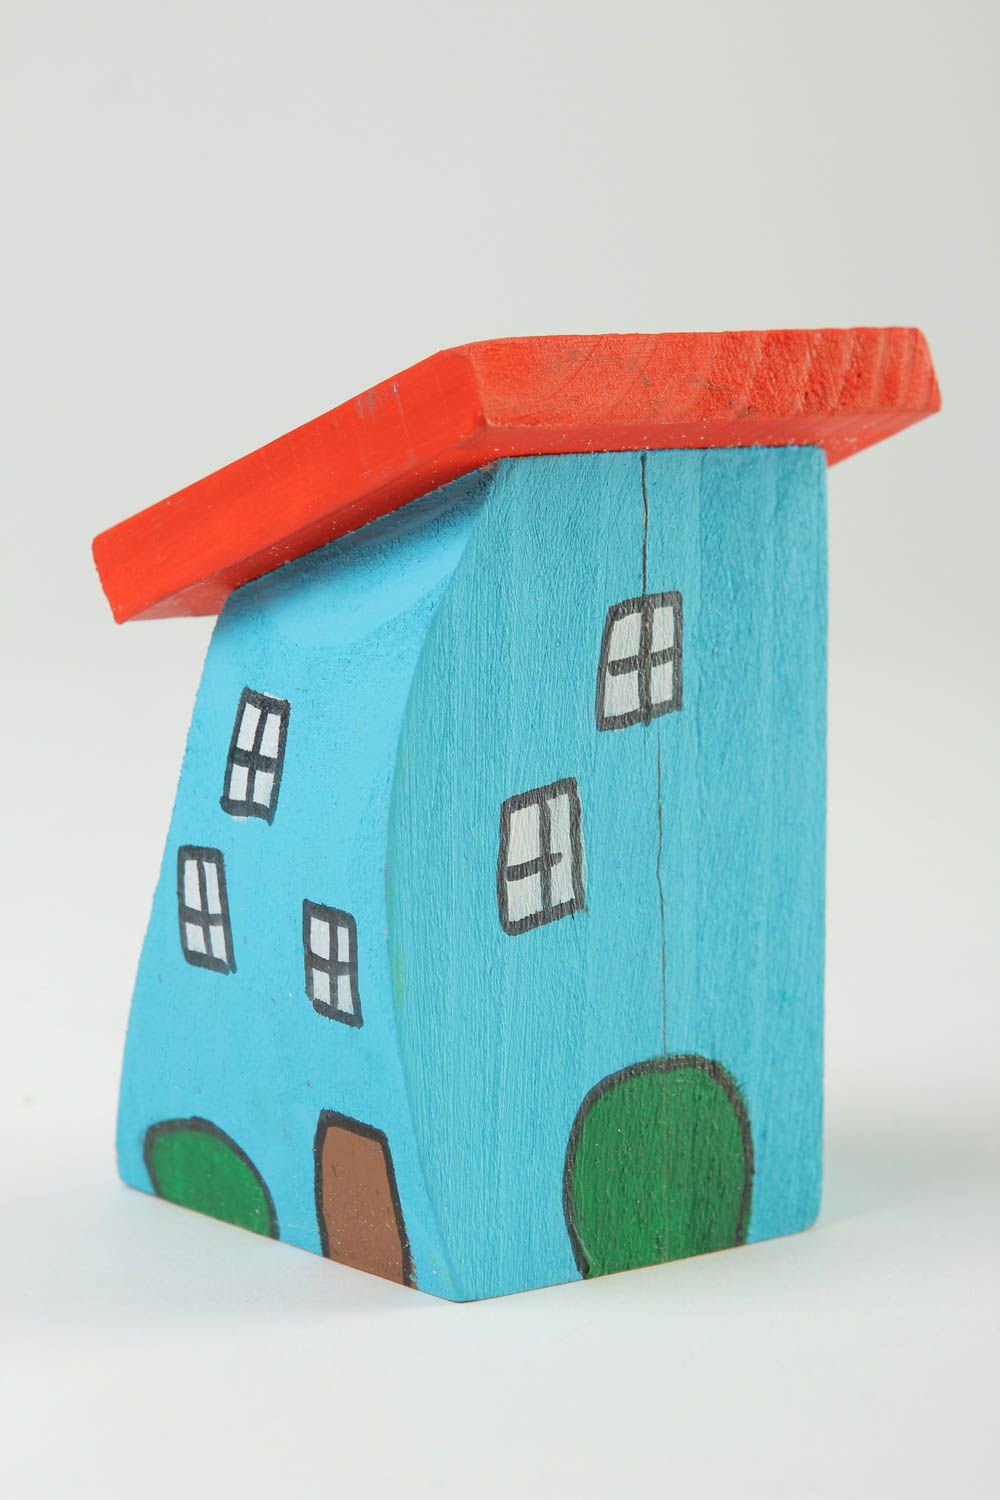 Dekofigur aus Holz handgefertigt Deko Idee Haus originelles Geschenk klein foto 2